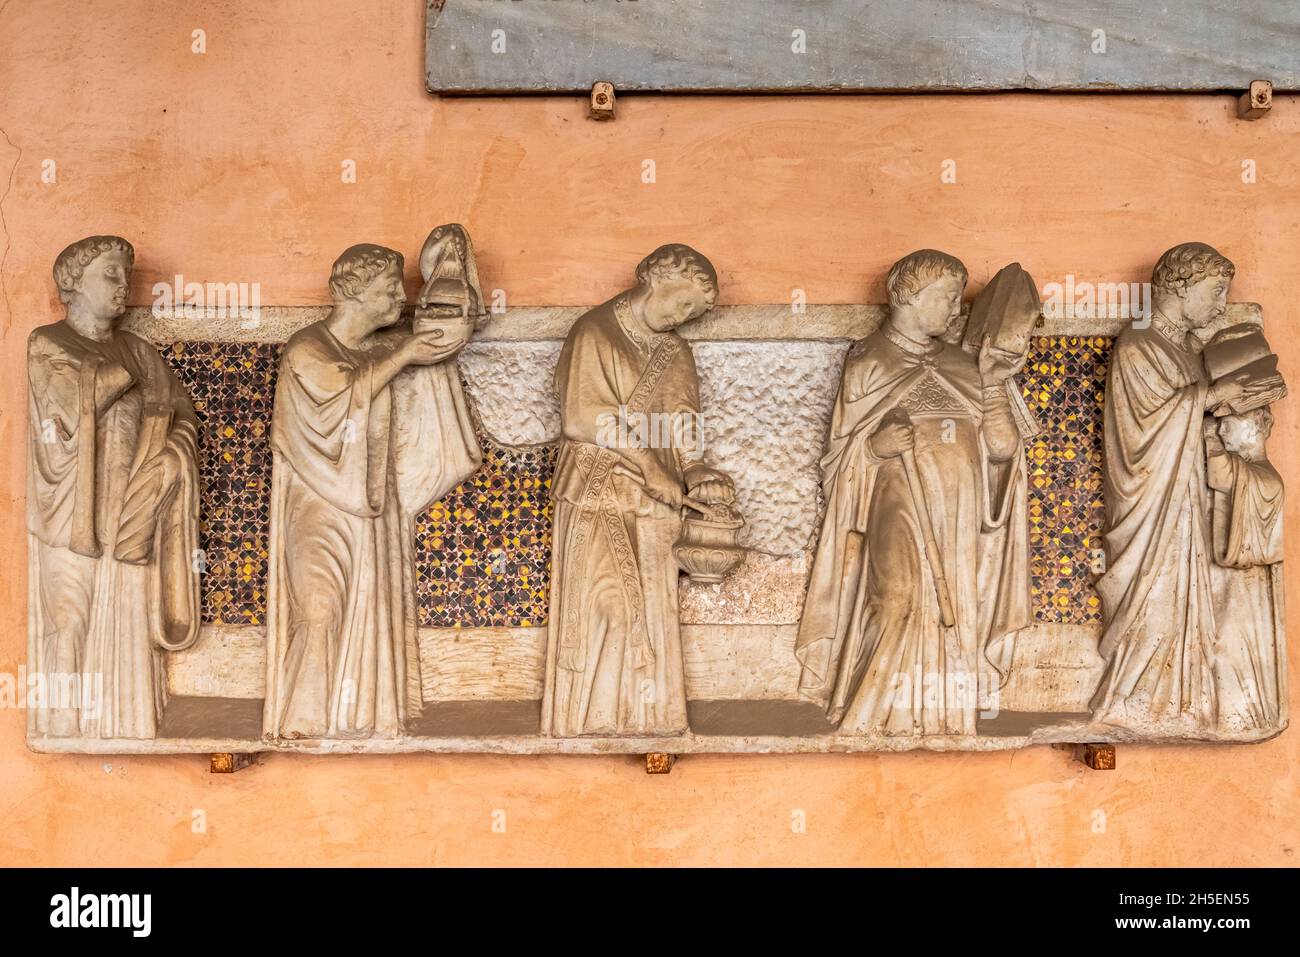 Mittelalterliche Marmorskulpturen, die in einem italienischen Kloster an einer Wand geschnitzt wurden und eine Gruppe katholischer Mönche darstellen Stockfoto